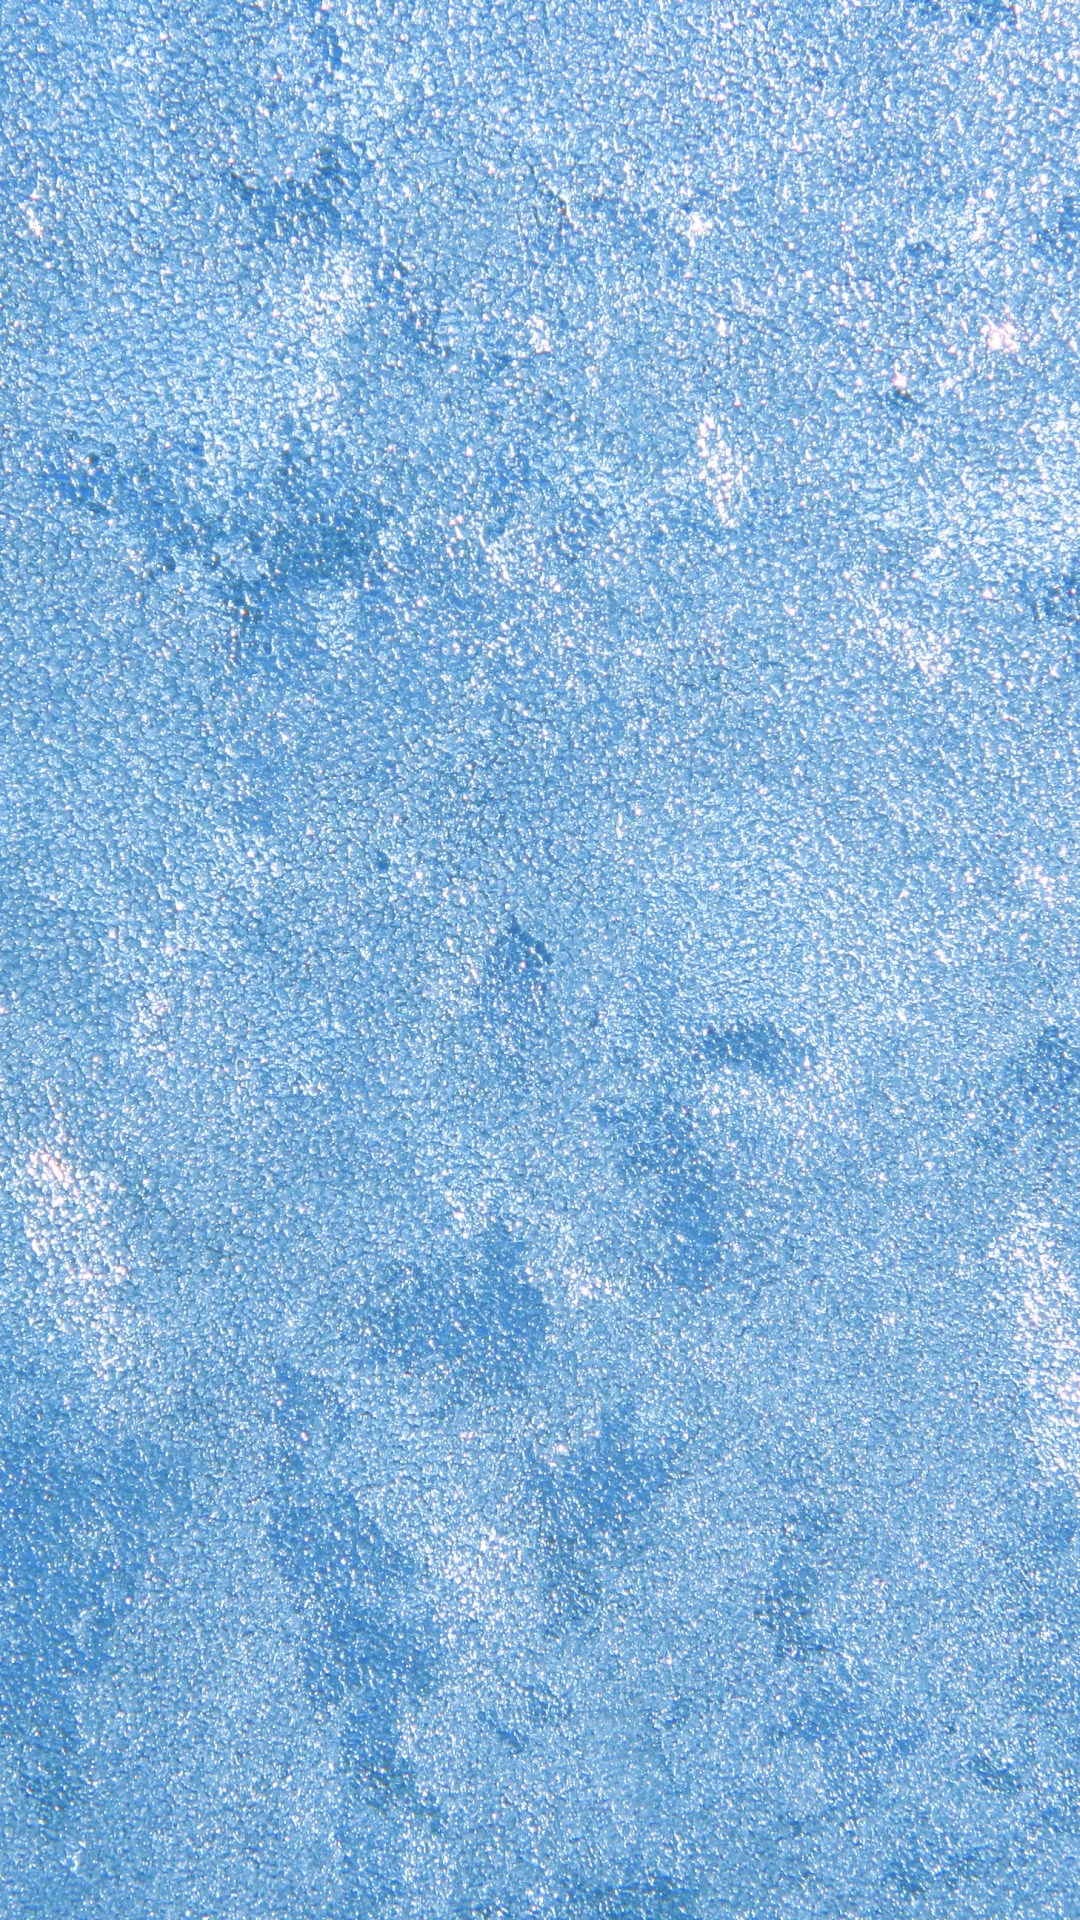 Peinture Abstraite Bleue et Blanche. Wallpaper in 1080x1920 Resolution